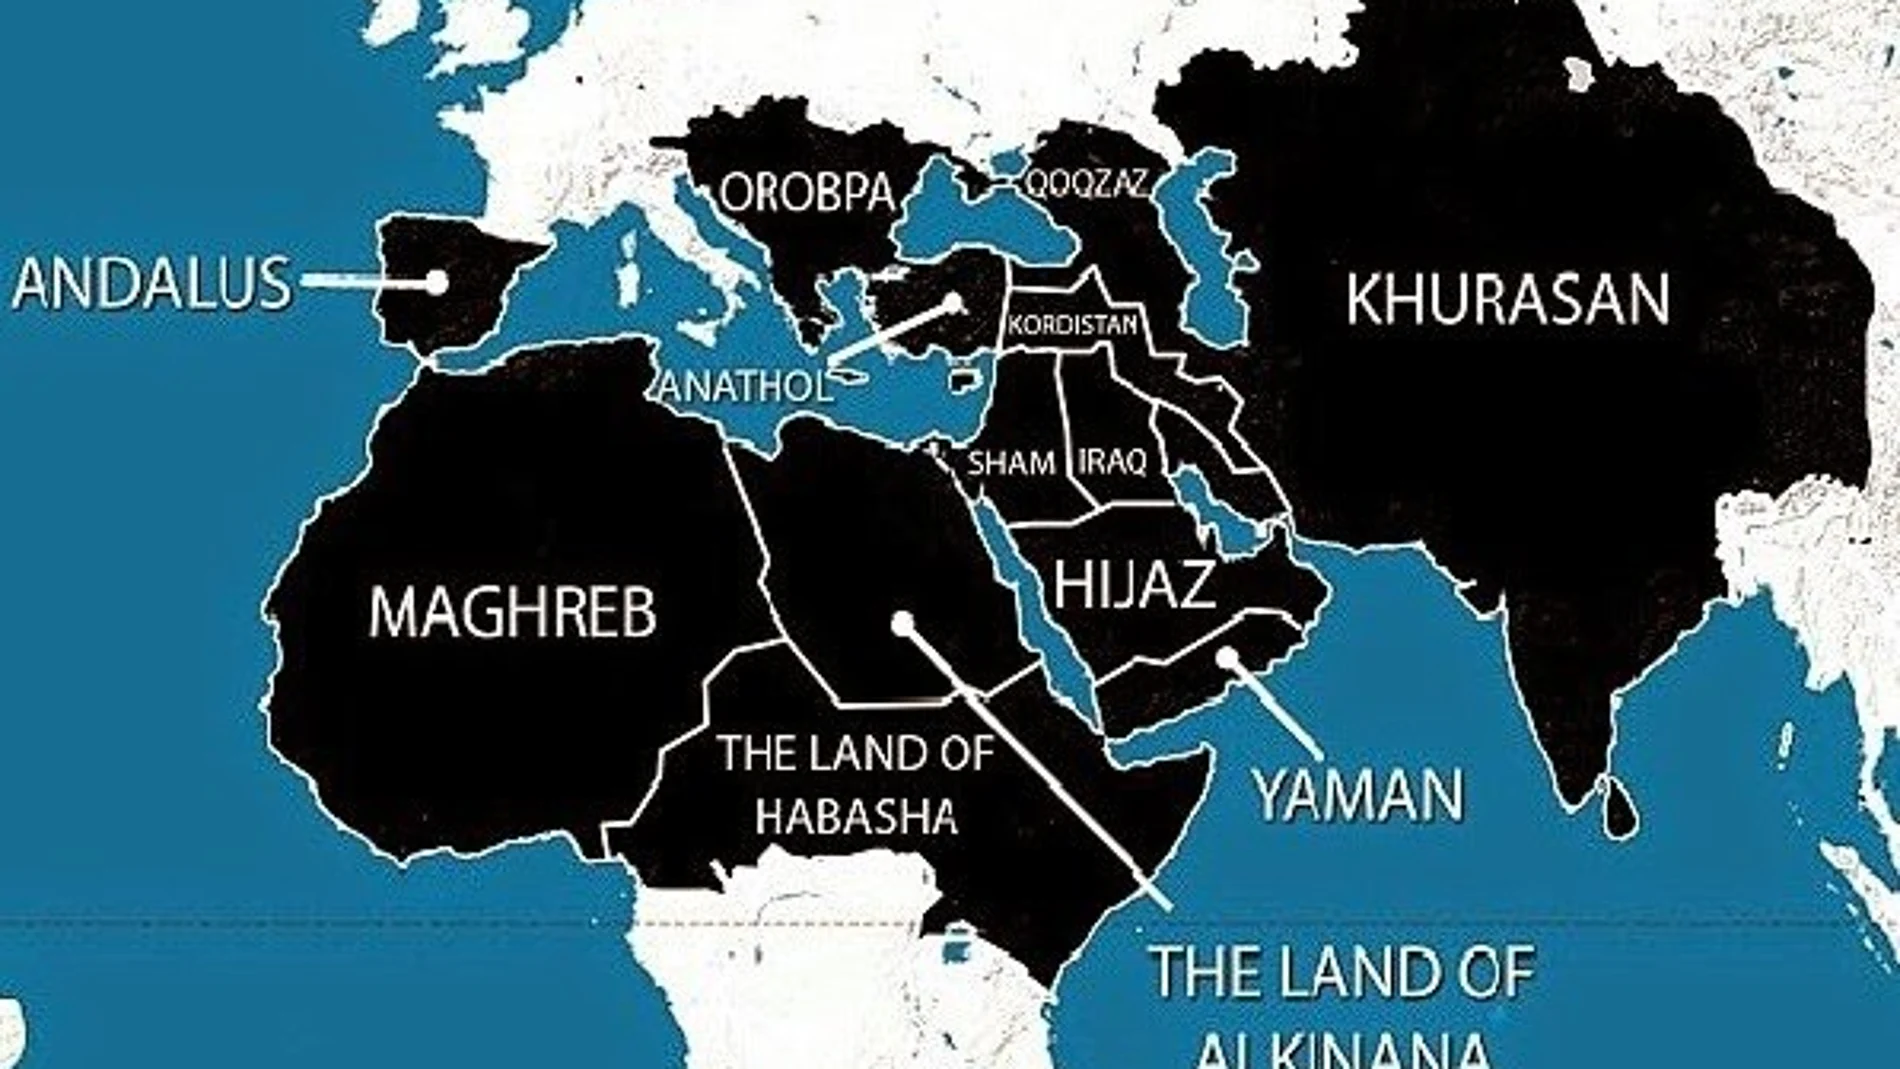 España, «Al Andalus», forma parte «inseparable» del «califato» que trata de formar el Estado Islámico mediante una estrategia conjunta de conquistas «militares» y guerra subversiva contra Occidente